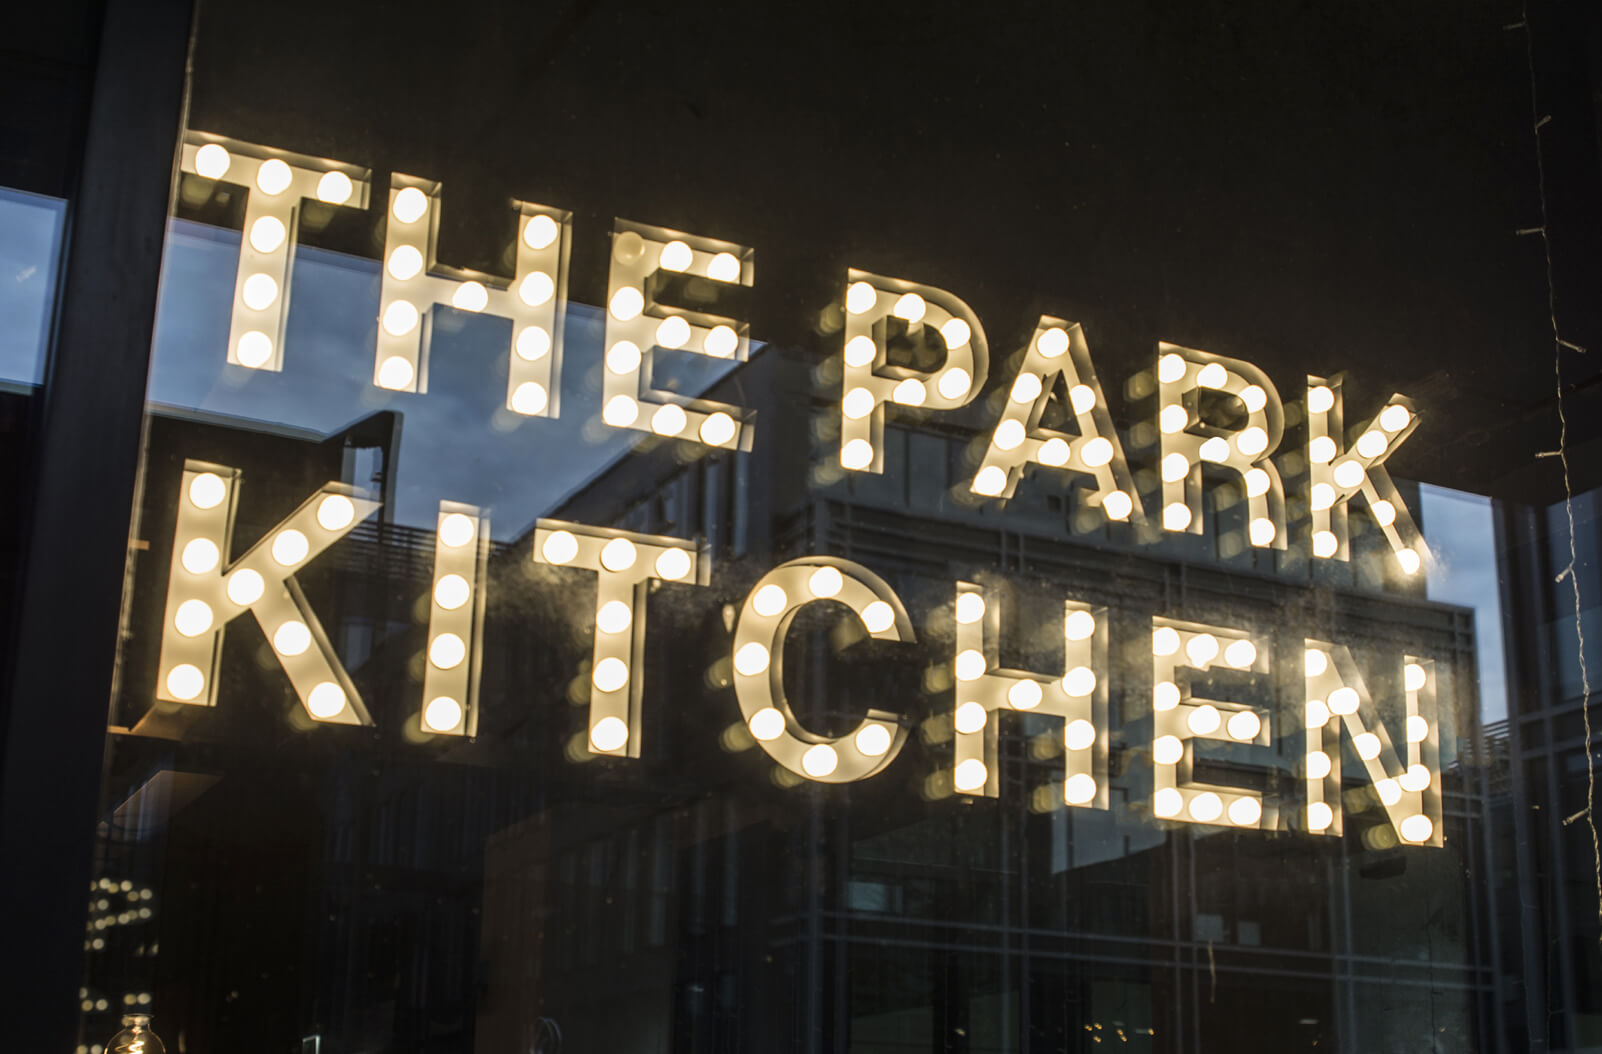 Le Parccuisine - La cuisine du parc - petites lettres avec ampoules placées derrière le verre